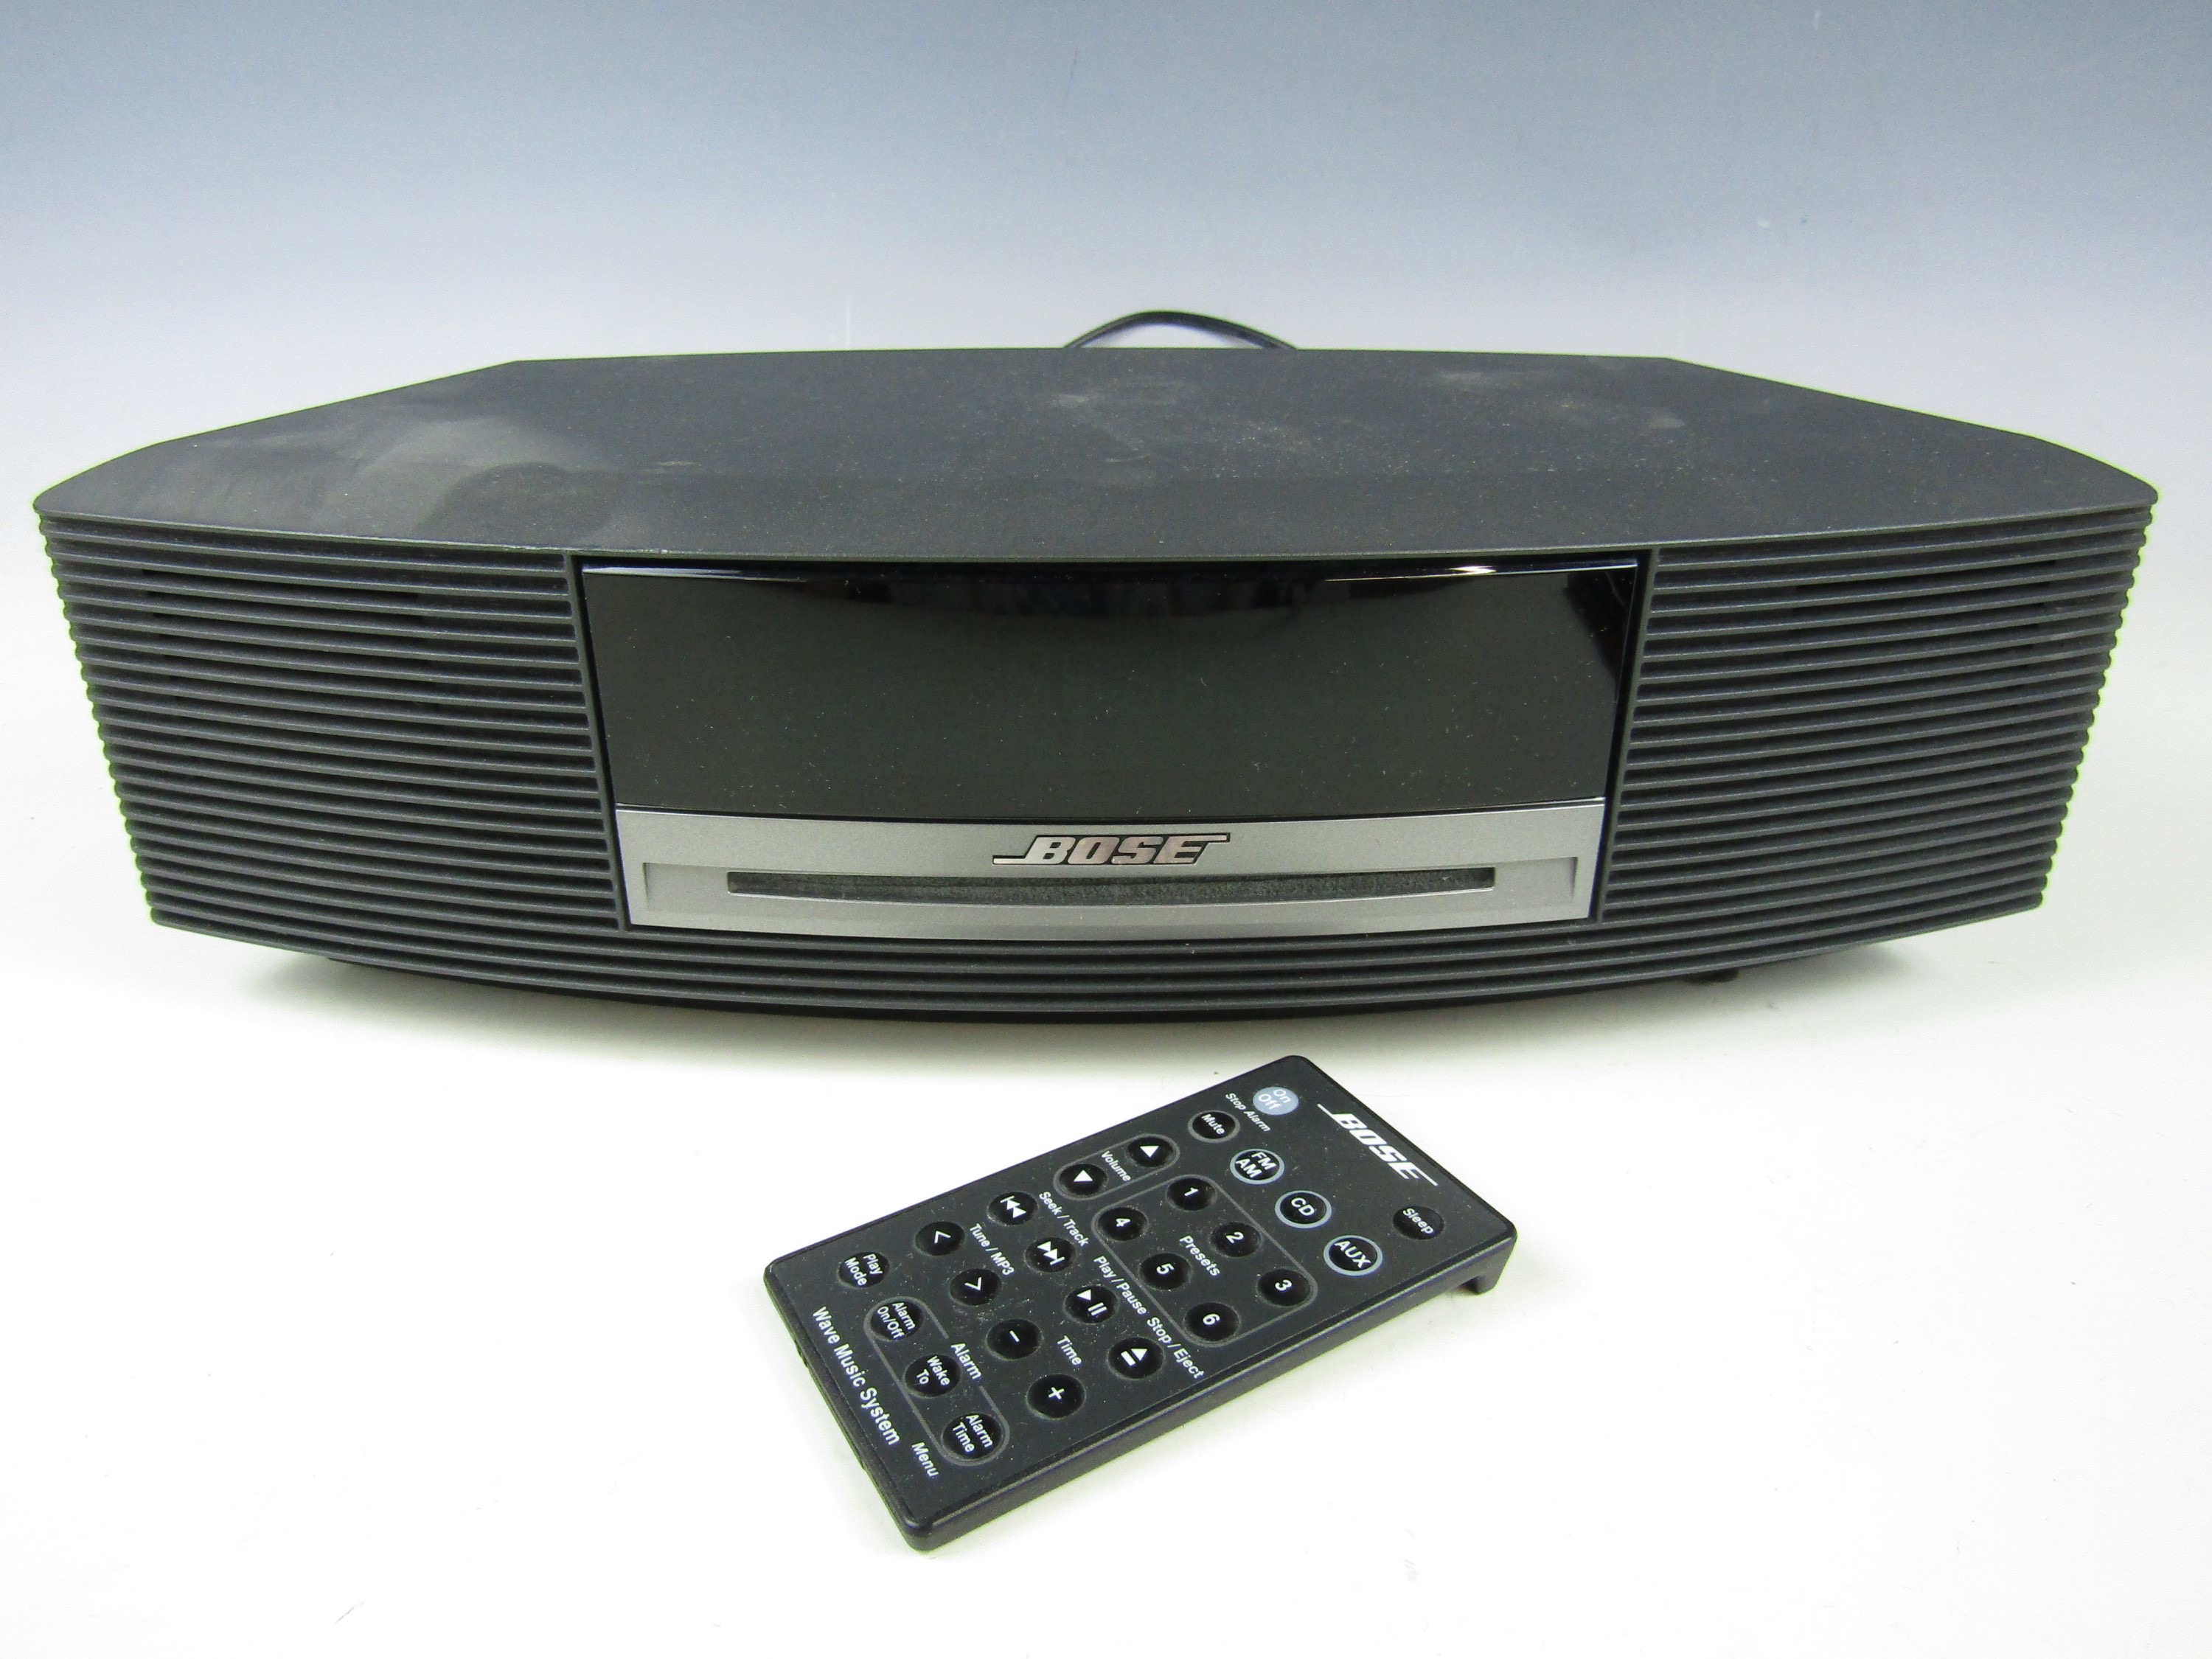 A Bose Wave music system, model AWRCCJ (a/f)